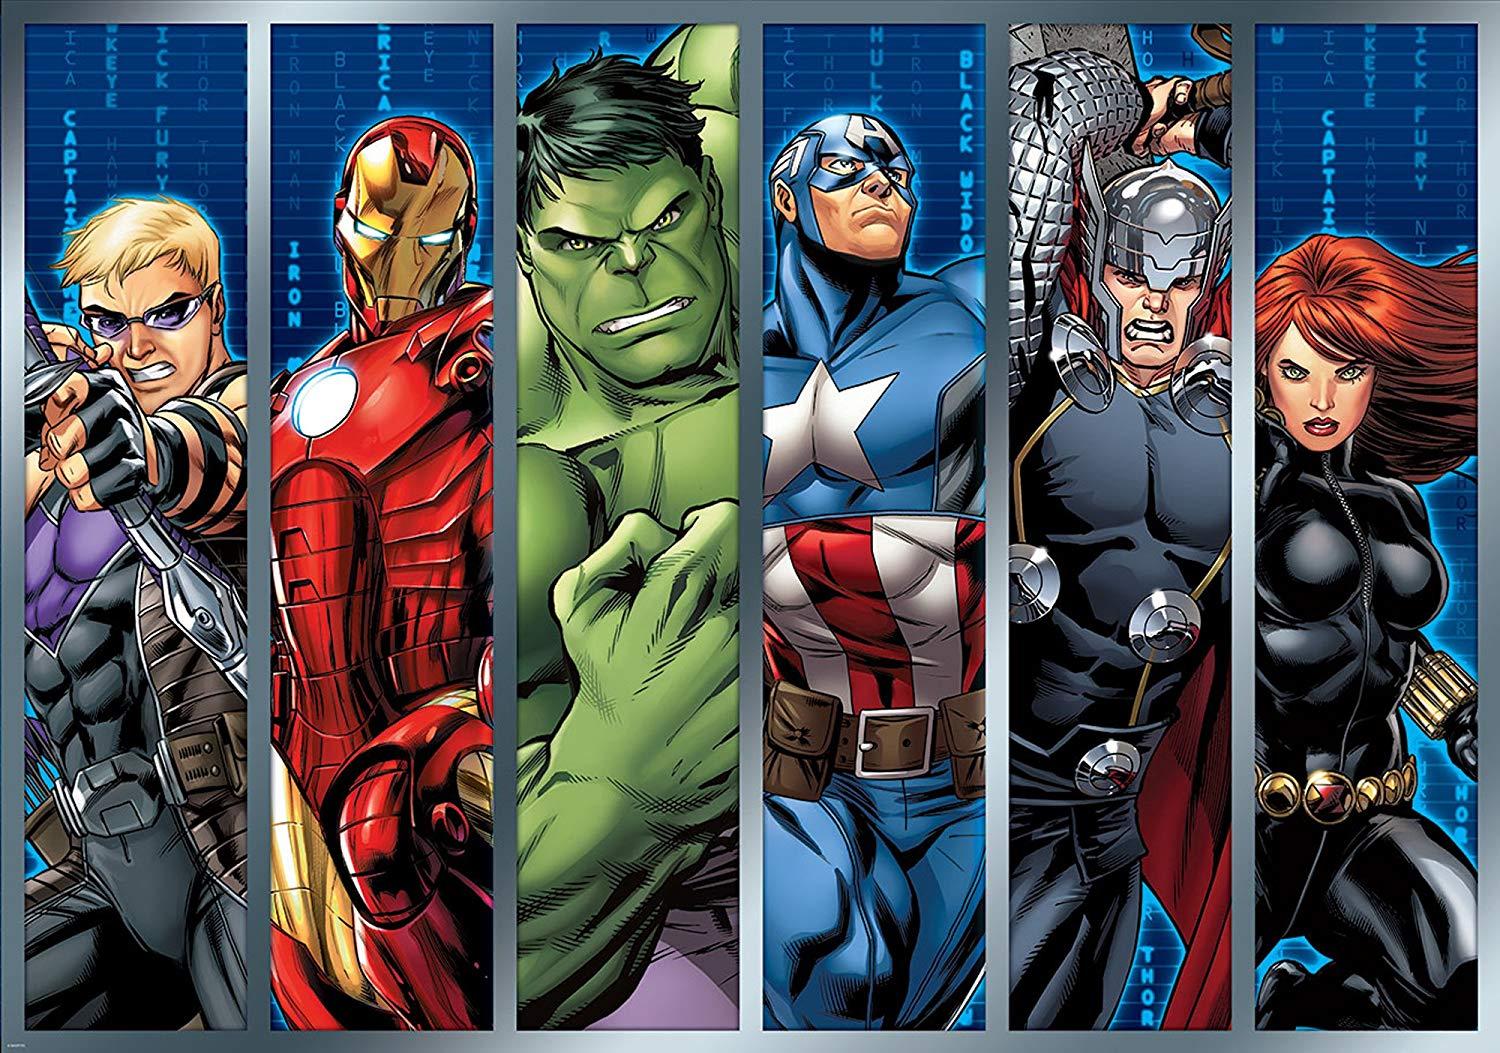 Marvel Avengers Assemble Strips Wallpaper Mural: Amazon.co.uk: DIY